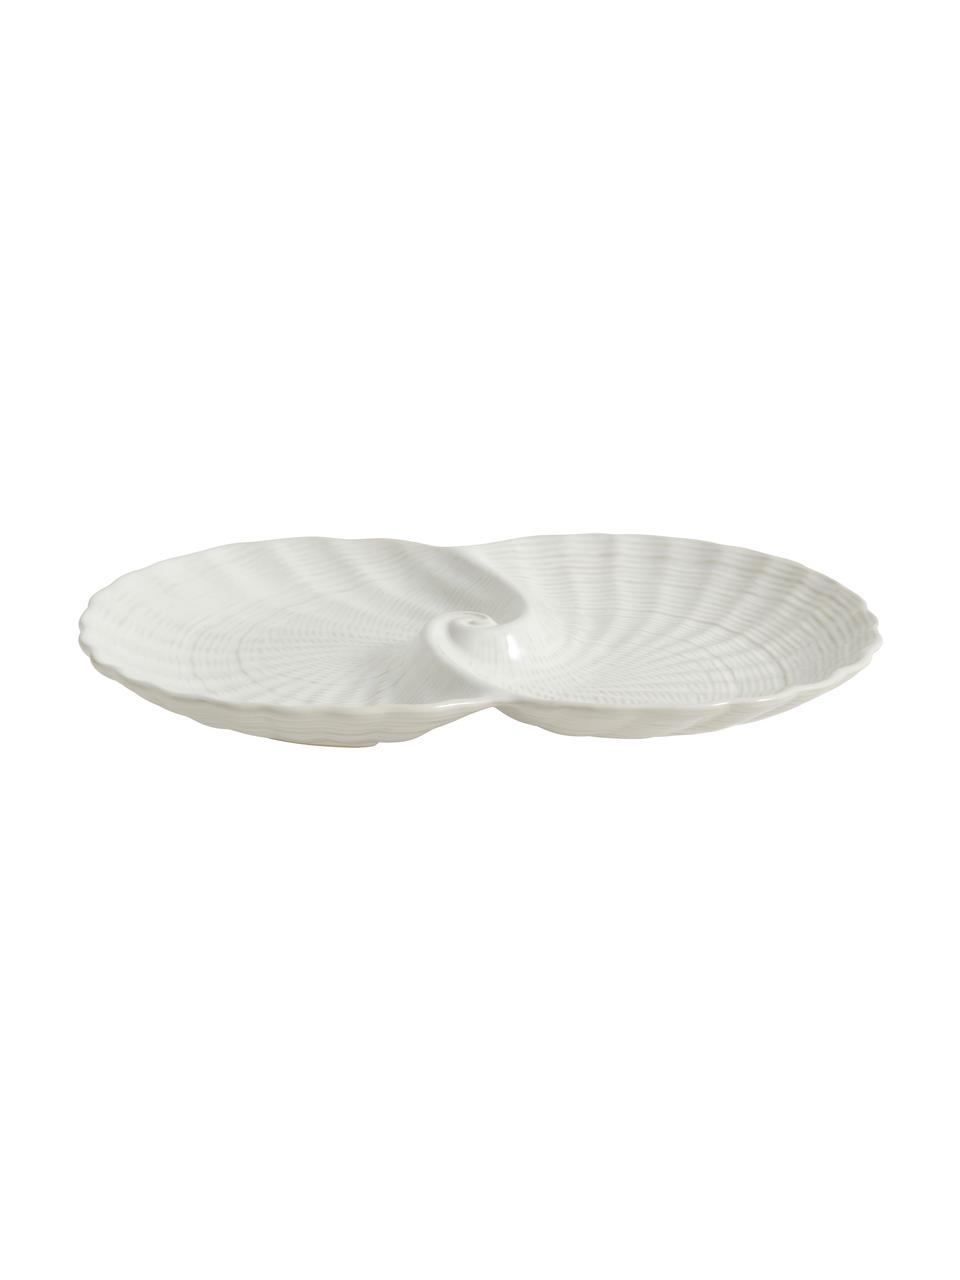 Miska dekoracyjna Gullfoss, Ceramika, Biały, S 30 x G 20 cm